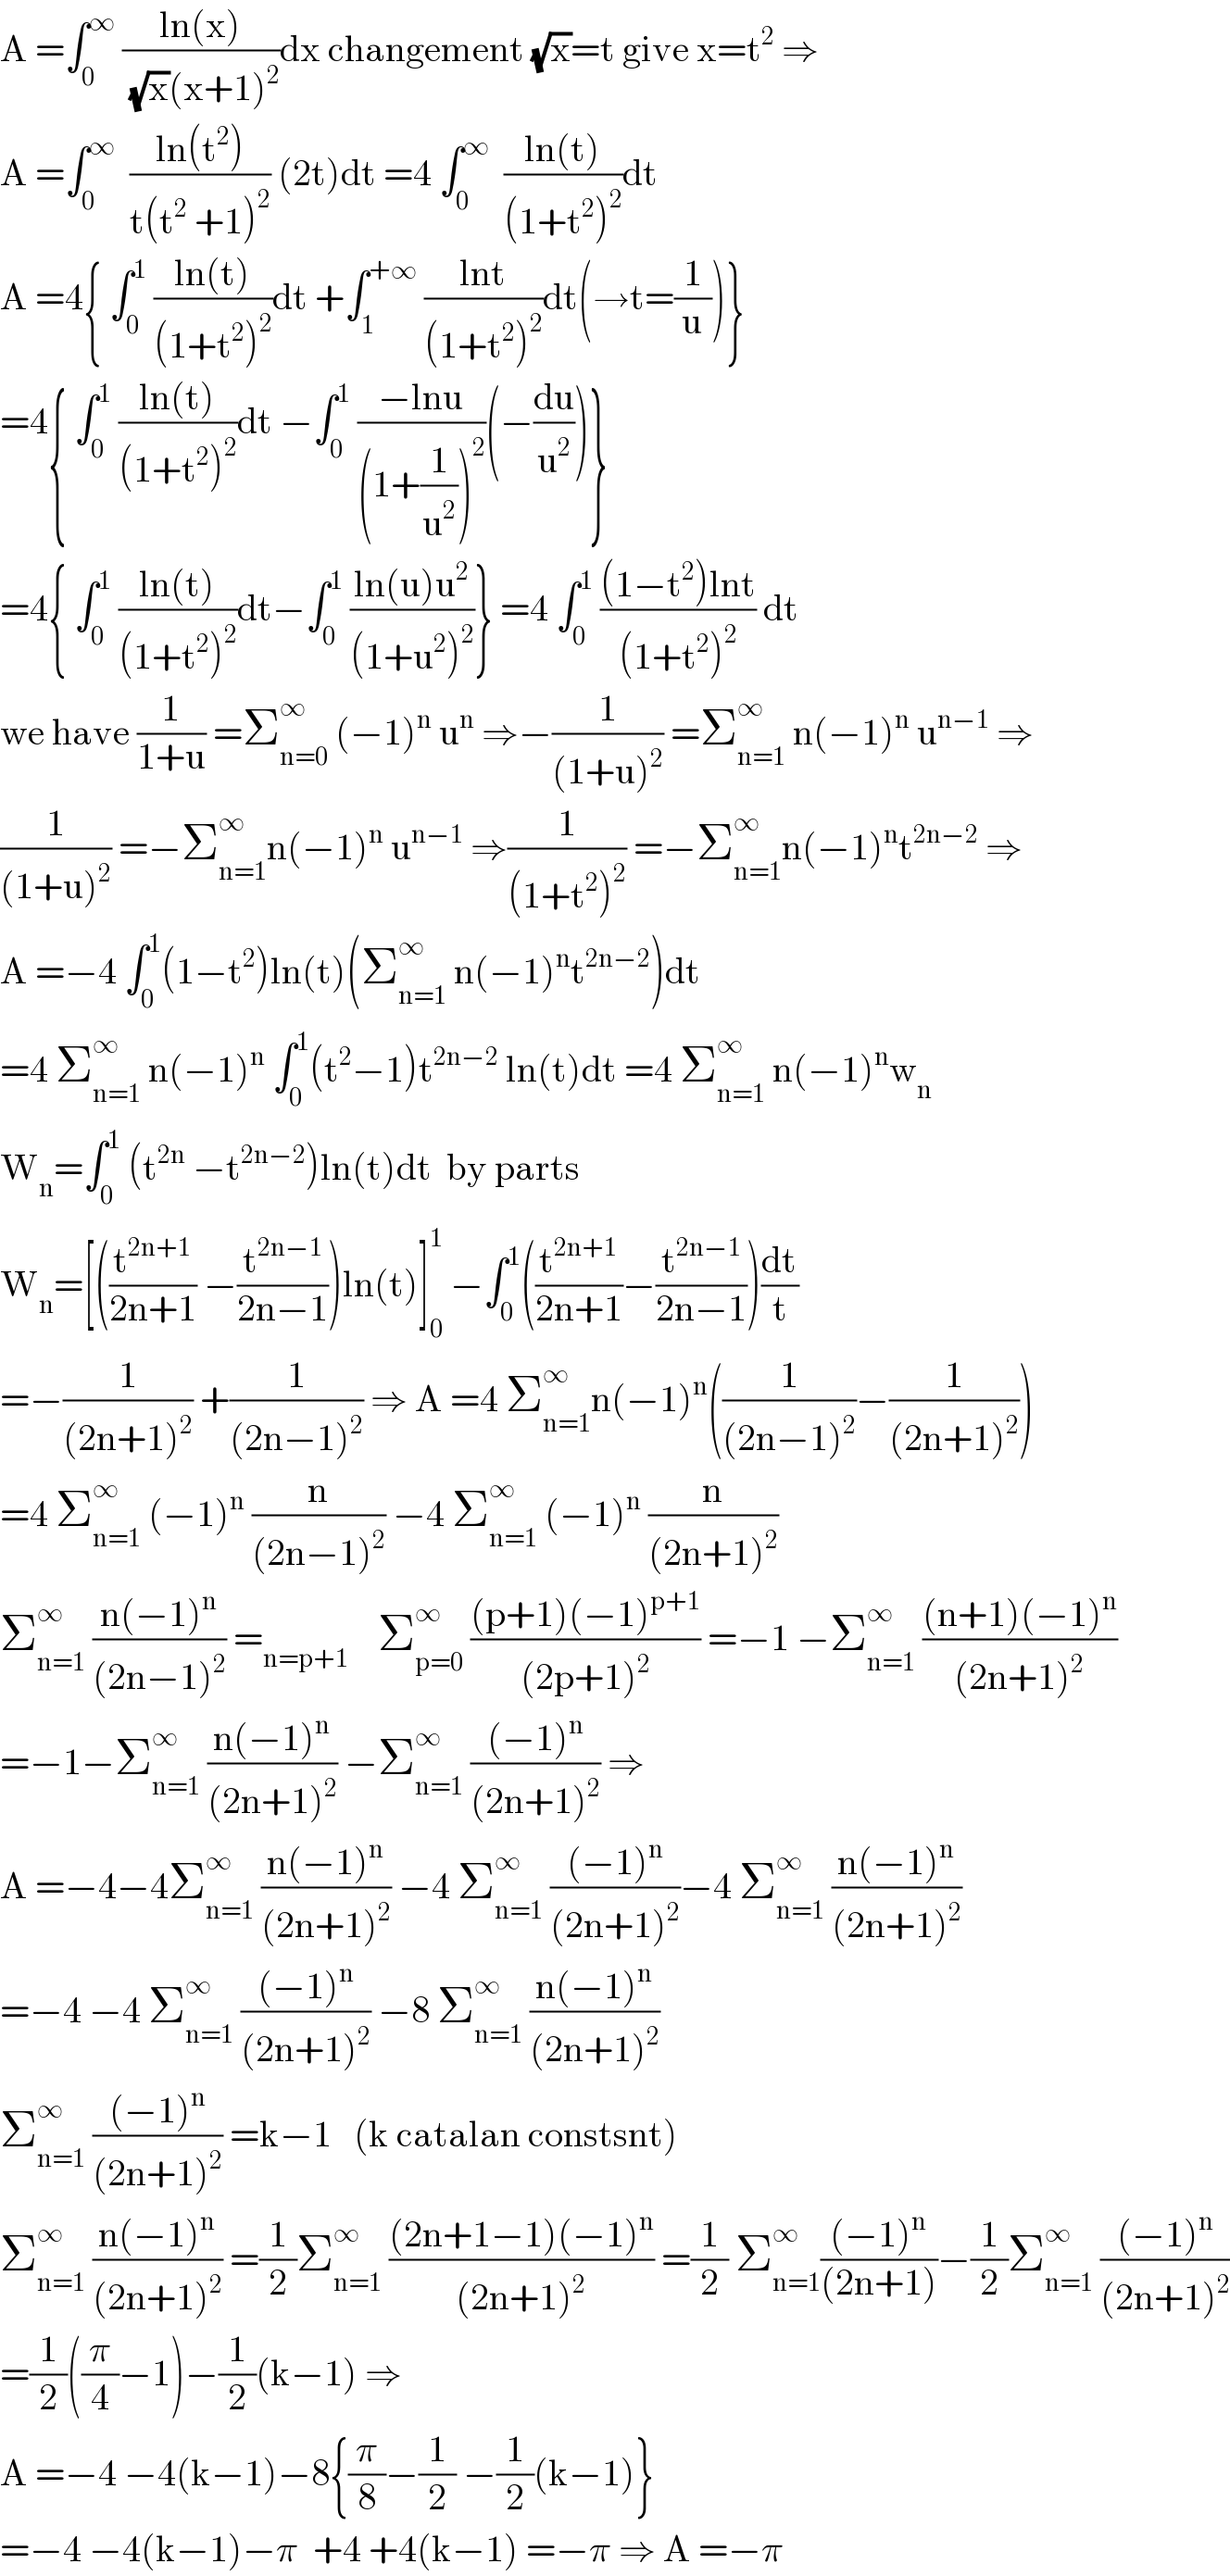 A =∫_0 ^∞  ((ln(x))/((√x)(x+1)^2 ))dx changement (√x)=t give x=t^2  ⇒  A =∫_0 ^∞   ((ln(t^2 ))/(t(t^2  +1)^2 )) (2t)dt =4 ∫_0 ^∞   ((ln(t))/((1+t^2 )^2 ))dt    A =4{ ∫_0 ^1  ((ln(t))/((1+t^2 )^2 ))dt +∫_1 ^(+∞)  ((lnt)/((1+t^2 )^2 ))dt(→t=(1/u))}  =4{ ∫_0 ^1  ((ln(t))/((1+t^2 )^2 ))dt −∫_0 ^1  ((−lnu)/((1+(1/u^2 ))^2 ))(−(du/u^2 ))}  =4{ ∫_0 ^1  ((ln(t))/((1+t^2 )^2 ))dt−∫_0 ^1  ((ln(u)u^2 )/((1+u^2 )^2 ))} =4 ∫_0 ^1  (((1−t^2 )lnt)/((1+t^2 )^2 )) dt  we have (1/(1+u)) =Σ_(n=0) ^∞  (−1)^n  u^n  ⇒−(1/((1+u)^2 )) =Σ_(n=1) ^∞  n(−1)^n  u^(n−1)  ⇒  (1/((1+u)^2 )) =−Σ_(n=1) ^∞ n(−1)^n  u^(n−1)  ⇒(1/((1+t^2 )^2 )) =−Σ_(n=1) ^∞ n(−1)^n t^(2n−2)  ⇒  A =−4 ∫_0 ^1 (1−t^2 )ln(t)(Σ_(n=1) ^∞  n(−1)^n t^(2n−2) )dt  =4 Σ_(n=1) ^∞  n(−1)^n  ∫_0 ^1 (t^2 −1)t^(2n−2)  ln(t)dt =4 Σ_(n=1) ^∞  n(−1)^n w_n   W_n =∫_0 ^1  (t^(2n)  −t^(2n−2) )ln(t)dt  by parts   W_n =[((t^(2n+1) /(2n+1)) −(t^(2n−1) /(2n−1)))ln(t)]_0 ^1  −∫_0 ^1 ((t^(2n+1) /(2n+1))−(t^(2n−1) /(2n−1)))(dt/t)  =−(1/((2n+1)^2 )) +(1/((2n−1)^2 )) ⇒ A =4 Σ_(n=1) ^∞ n(−1)^n ((1/((2n−1)^2 ))−(1/((2n+1)^2 )))  =4 Σ_(n=1) ^∞  (−1)^n  (n/((2n−1)^2 )) −4 Σ_(n=1) ^∞  (−1)^n  (n/((2n+1)^2 ))  Σ_(n=1) ^∞  ((n(−1)^n )/((2n−1)^2 )) =_(n=p+1)     Σ_(p=0) ^∞  (((p+1)(−1)^(p+1) )/((2p+1)^2 )) =−1 −Σ_(n=1) ^∞  (((n+1)(−1)^n )/((2n+1)^2 ))  =−1−Σ_(n=1) ^∞  ((n(−1)^n )/((2n+1)^2 )) −Σ_(n=1) ^∞  (((−1)^n )/((2n+1)^2 )) ⇒  A =−4−4Σ_(n=1) ^∞  ((n(−1)^n )/((2n+1)^2 )) −4 Σ_(n=1) ^∞  (((−1)^n )/((2n+1)^2 ))−4 Σ_(n=1) ^∞  ((n(−1)^n )/((2n+1)^2 ))  =−4 −4 Σ_(n=1) ^∞  (((−1)^n )/((2n+1)^2 )) −8 Σ_(n=1) ^∞  ((n(−1)^n )/((2n+1)^2 ))  Σ_(n=1) ^∞  (((−1)^n )/((2n+1)^2 )) =k−1   (k catalan constsnt)  Σ_(n=1) ^∞  ((n(−1)^n )/((2n+1)^2 )) =(1/2)Σ_(n=1) ^∞  (((2n+1−1)(−1)^n )/((2n+1)^2 )) =(1/2) Σ_(n=1) ^∞ (((−1)^n )/((2n+1)))−(1/2)Σ_(n=1) ^∞  (((−1)^n )/((2n+1)^2 ))  =(1/2)((π/4)−1)−(1/2)(k−1) ⇒  A =−4 −4(k−1)−8{(π/8)−(1/2) −(1/2)(k−1)}  =−4 −4(k−1)−π  +4 +4(k−1) =−π ⇒ A =−π  